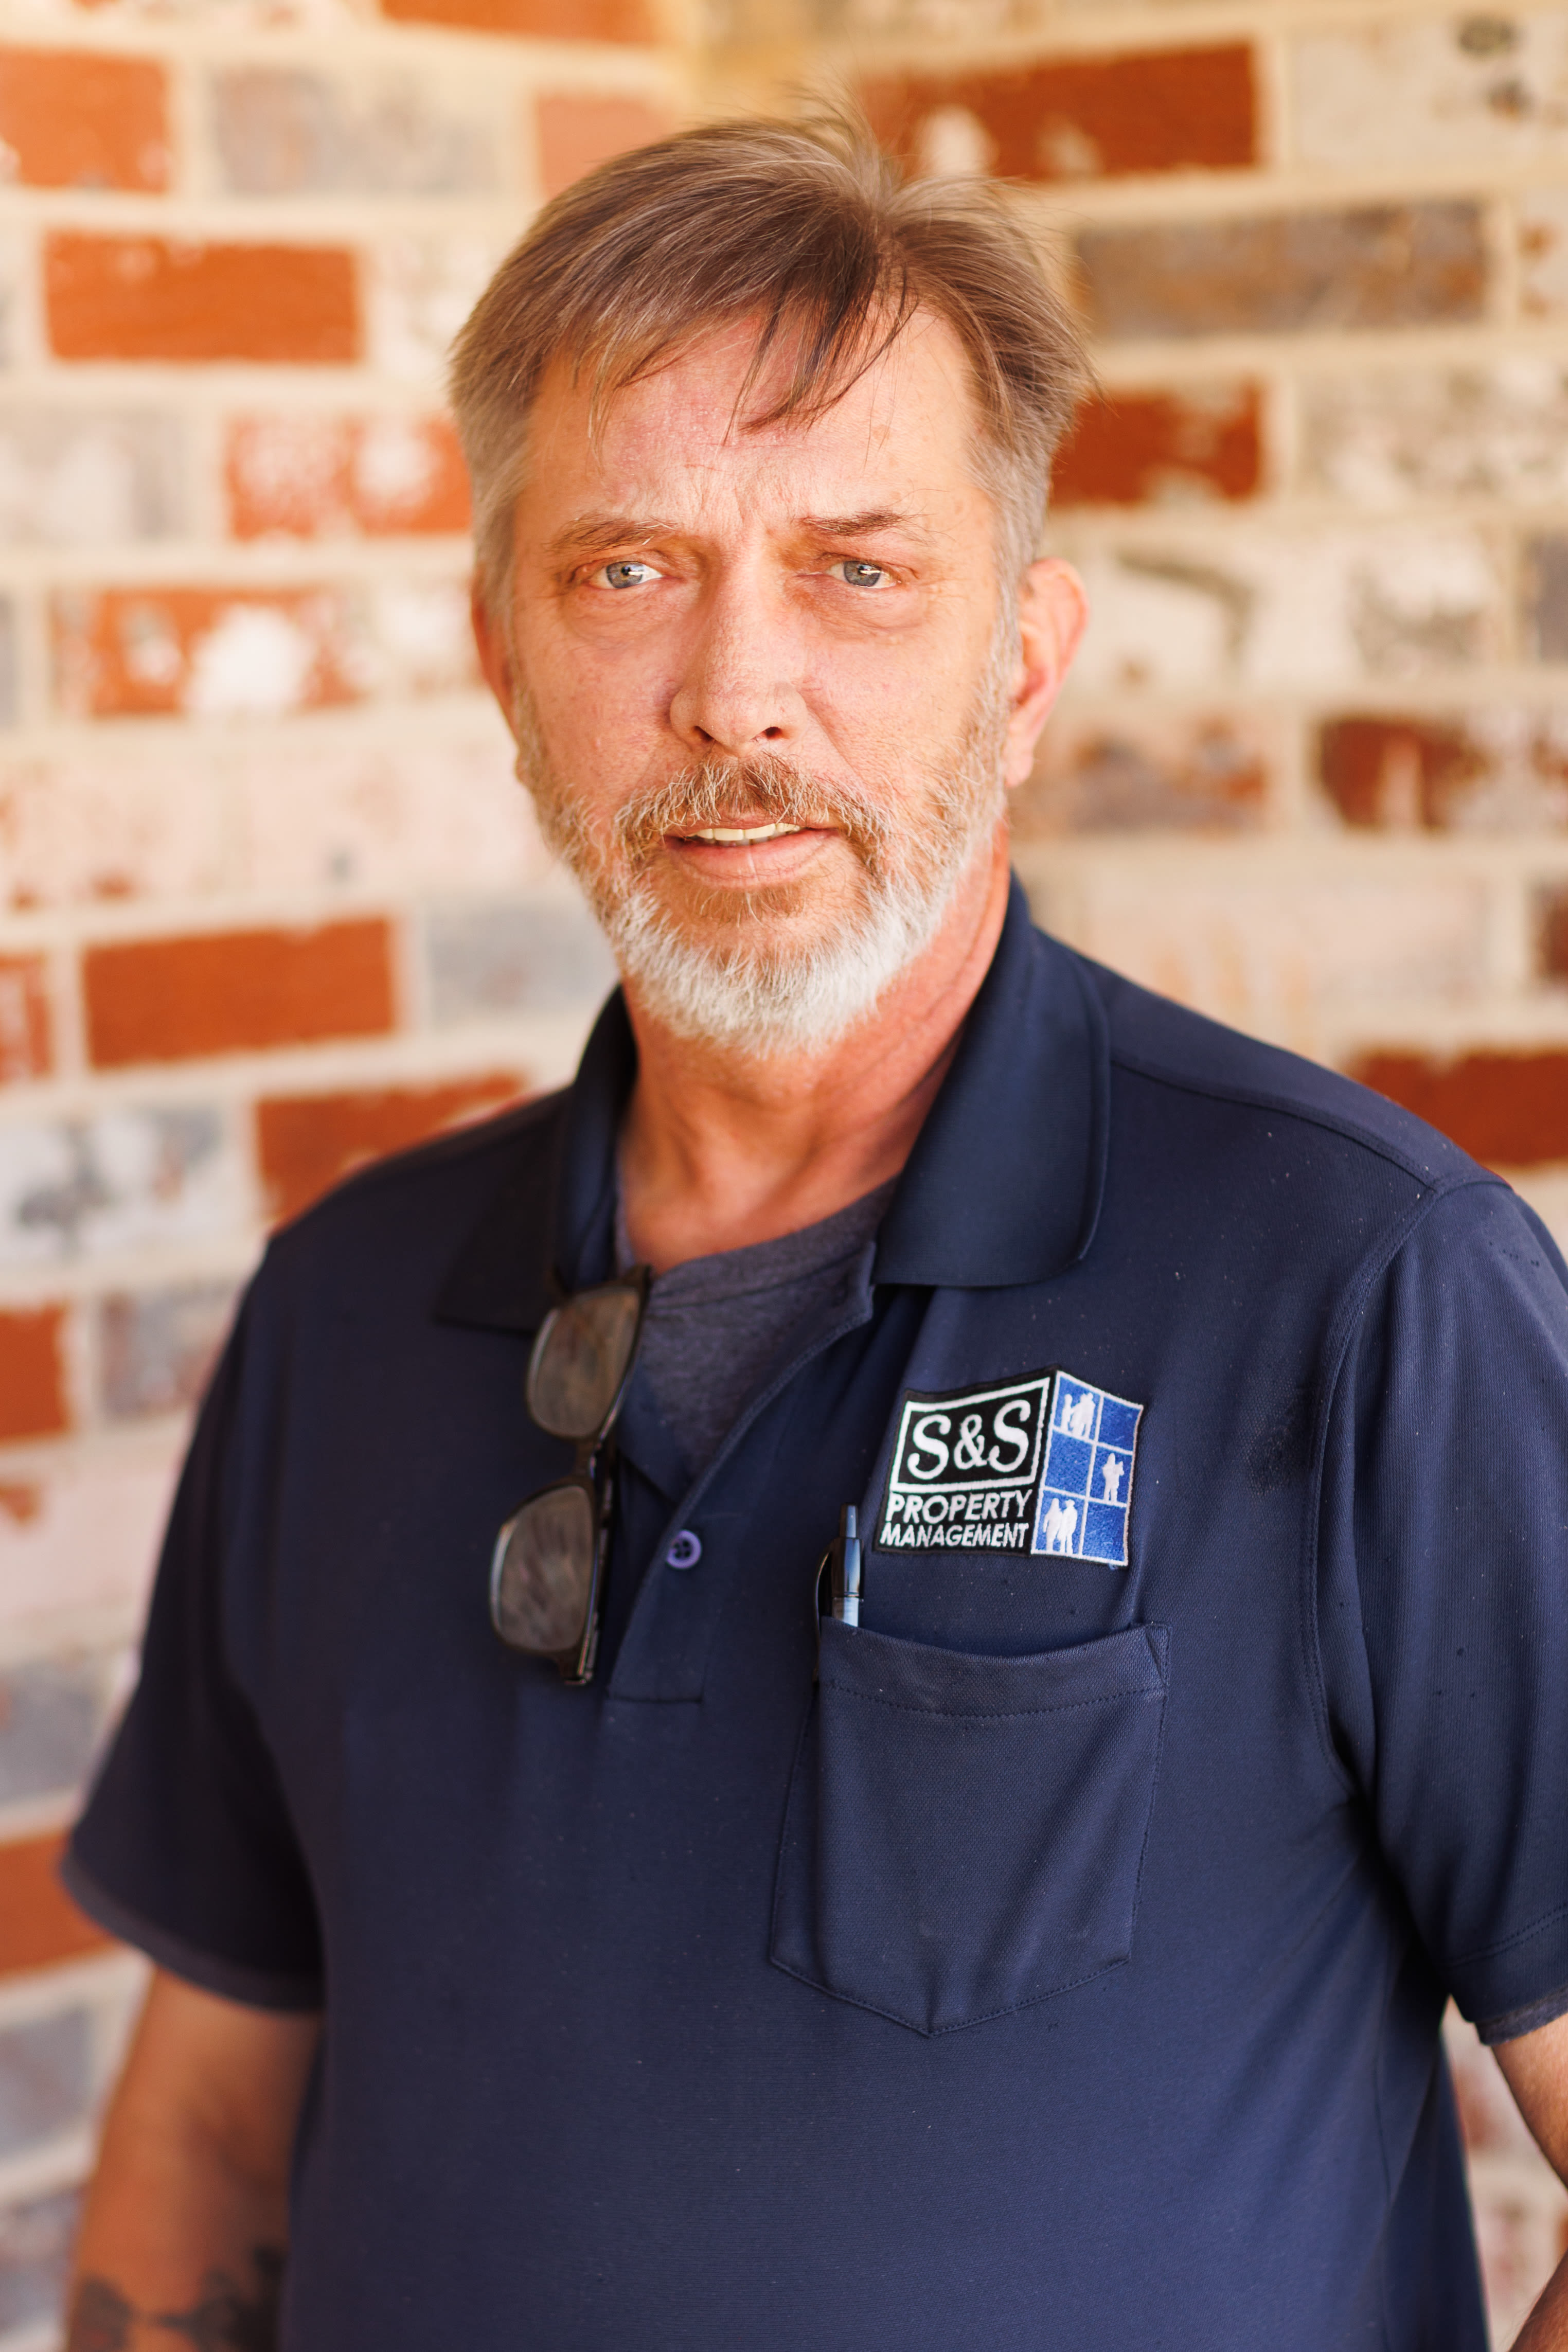 Kris Olsen, Regional Maintenance Supervisor for S&S Property Management in Nashville, Tennessee